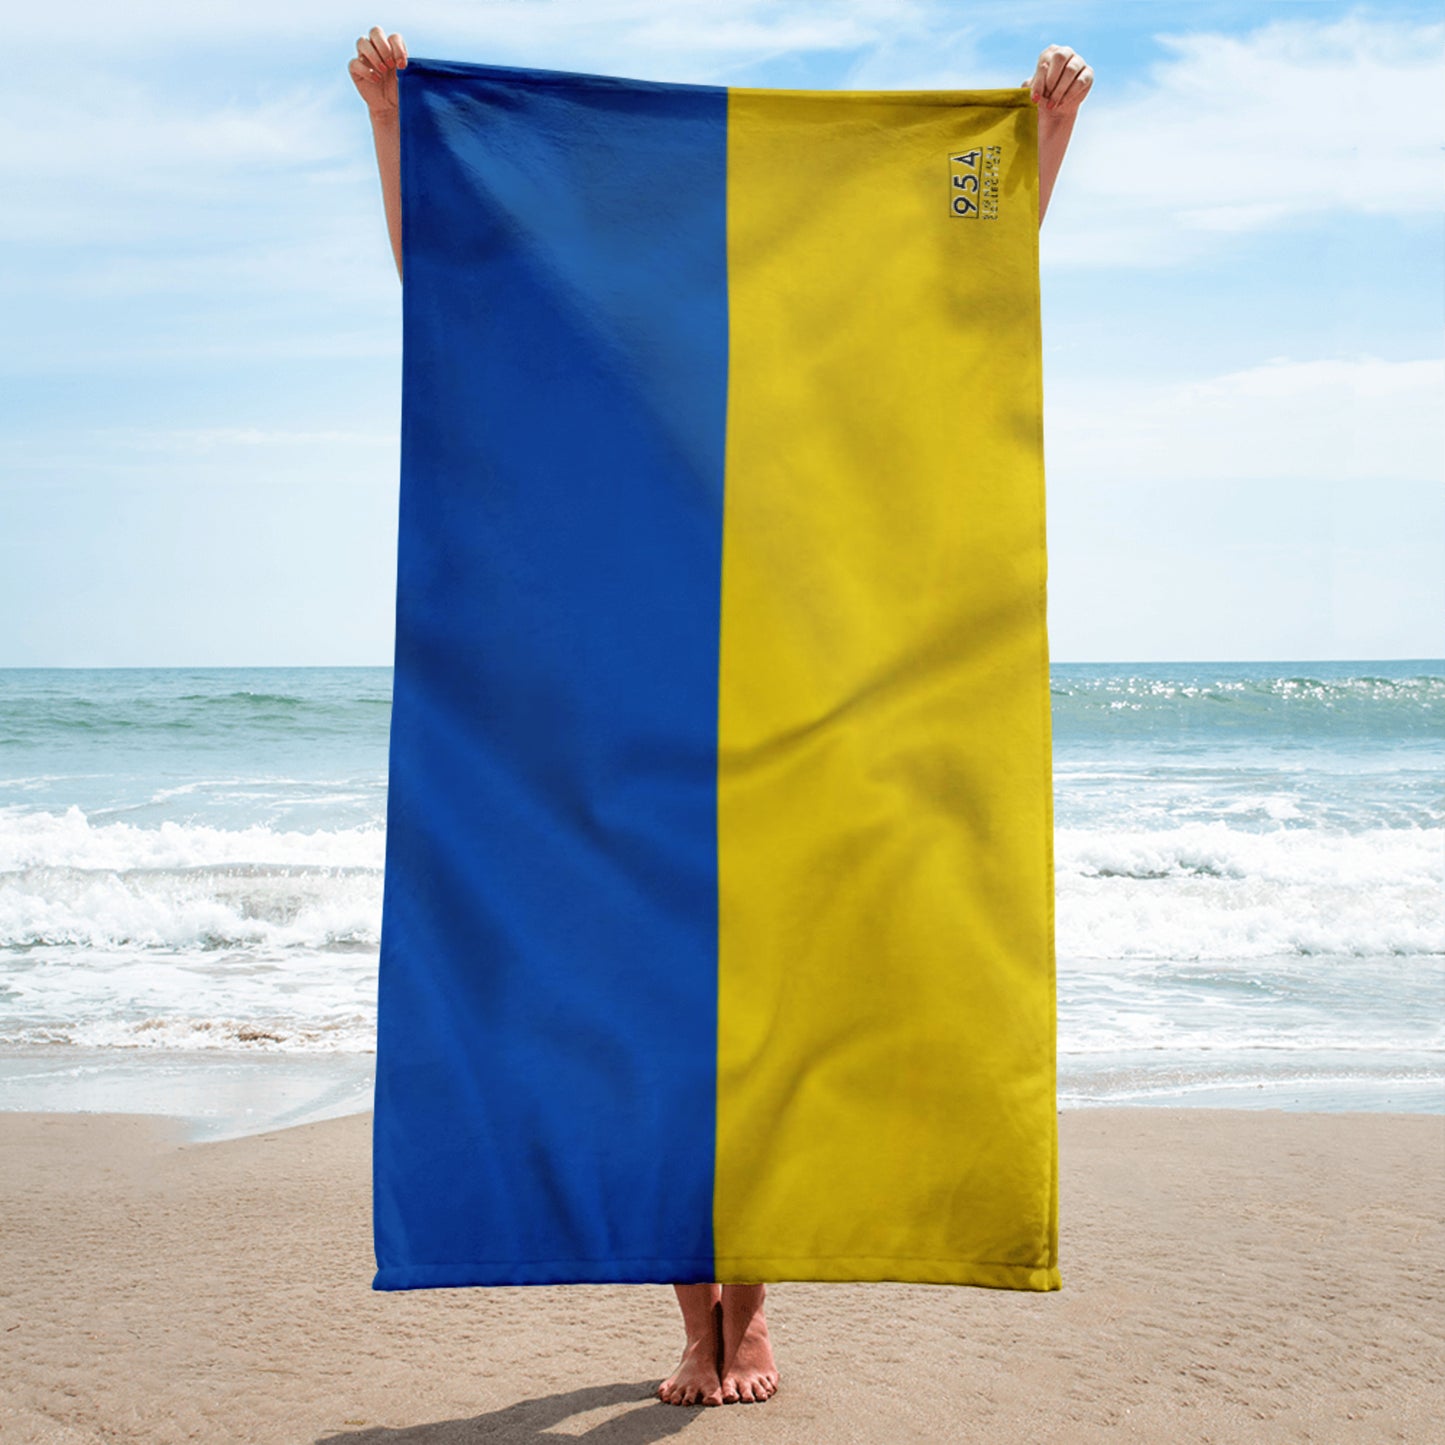 Ukraine 954 Signature Towel